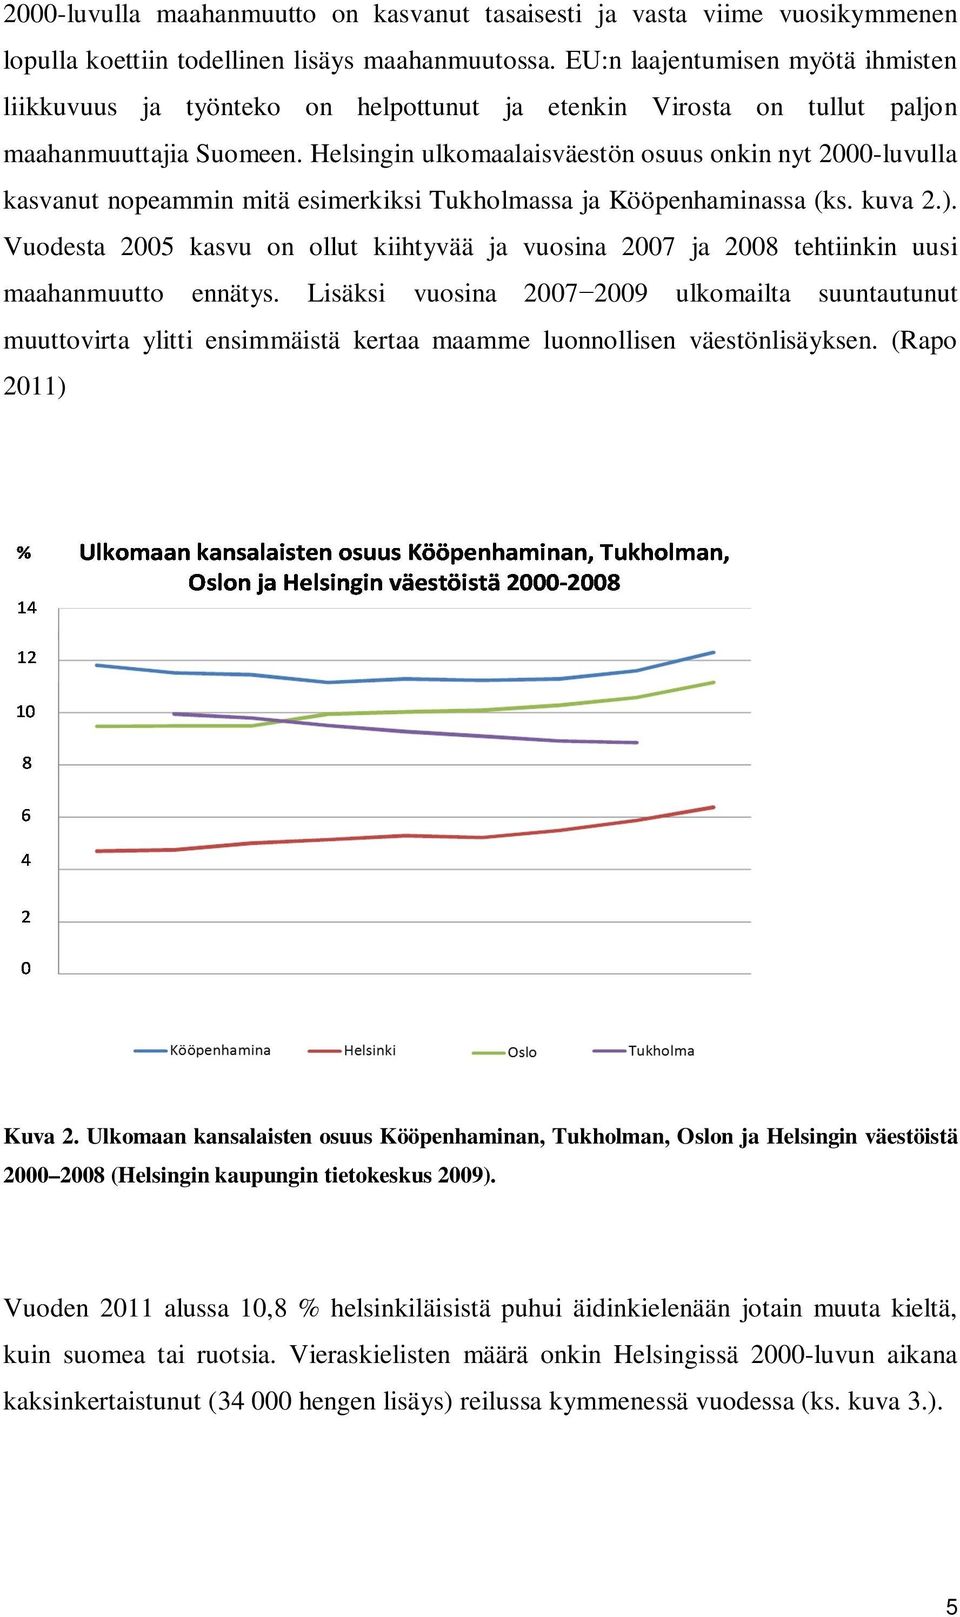 Helsingin ulkomaalaisväestön osuus onkin nyt 2000-luvulla kasvanut nopeammin mitä esimerkiksi Tukholmassa ja Kööpenhaminassa (ks. kuva 2.).